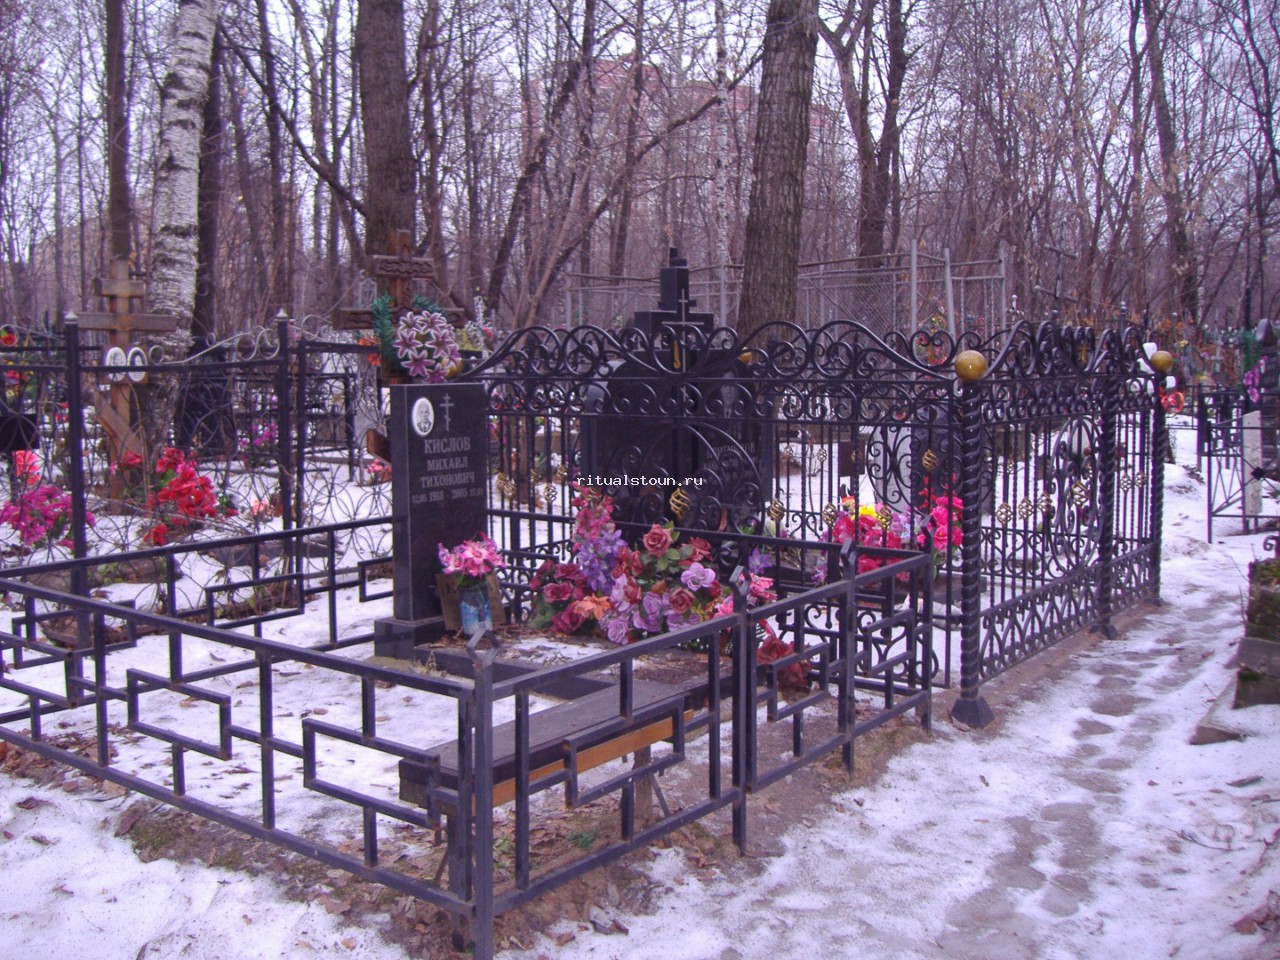 Московские могилы Богородское кладбище